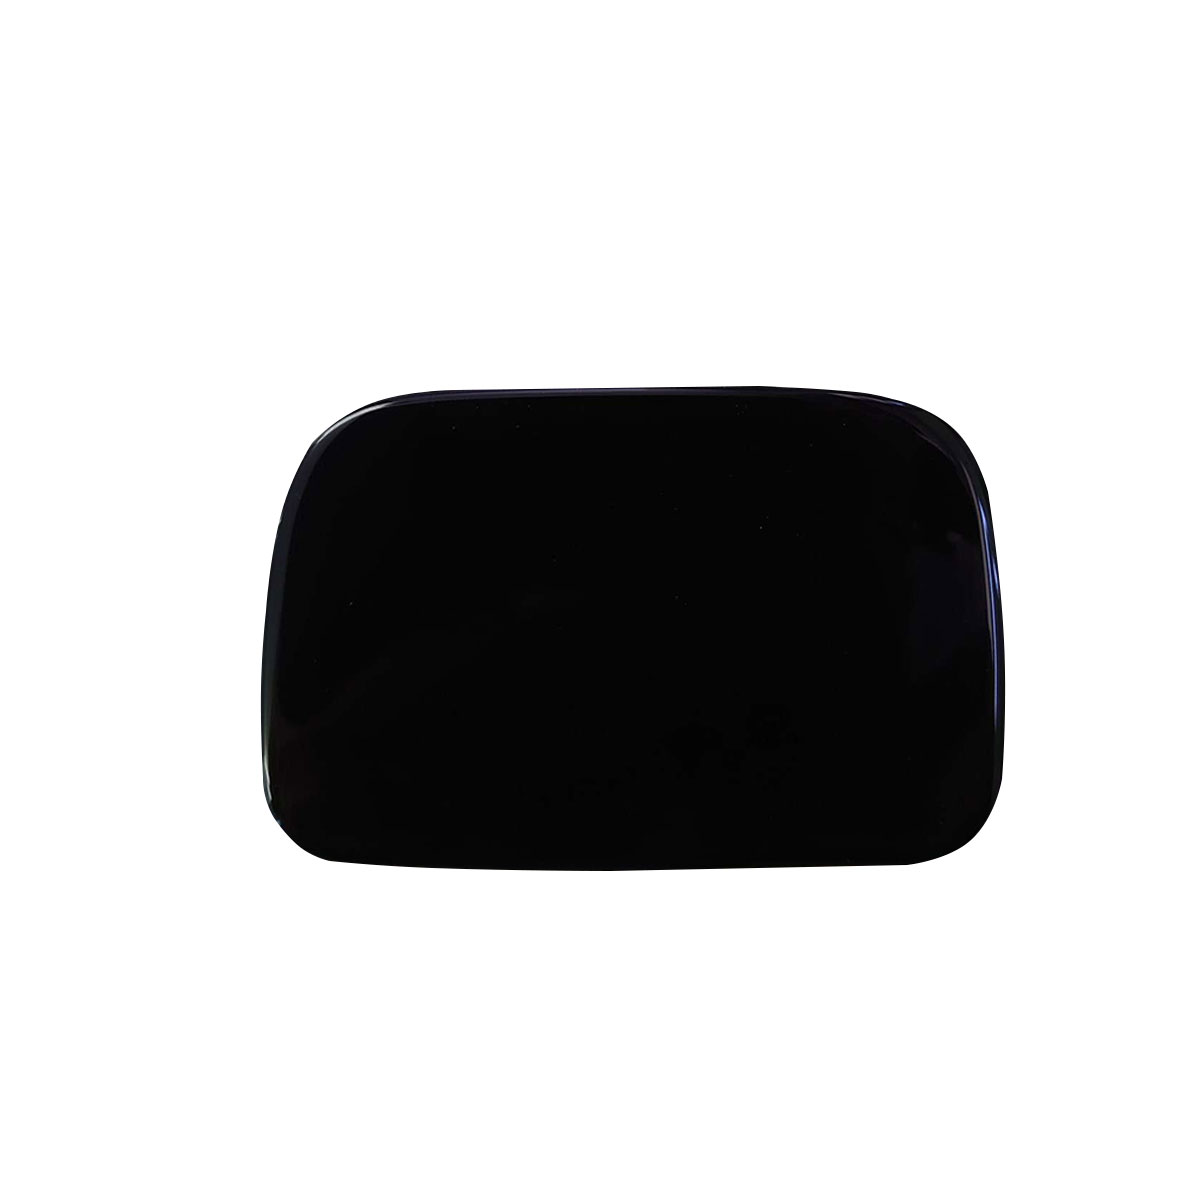 キャラバン ミラーホール #KH3 スーパーブラック NV350 【メール便無料】 E26 リア 新しいスタイル ミラーレス ゲート ミラー ホールカバー リアミラー 塗装品